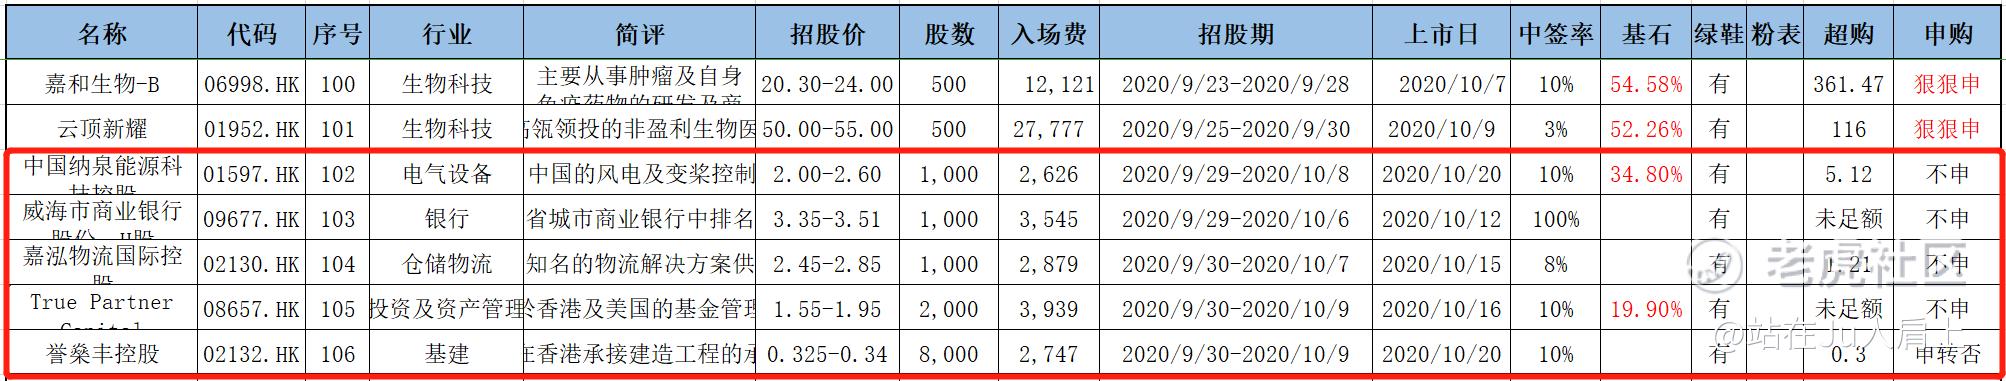 配售结果解析｜嘉和生物06998.HK看涨